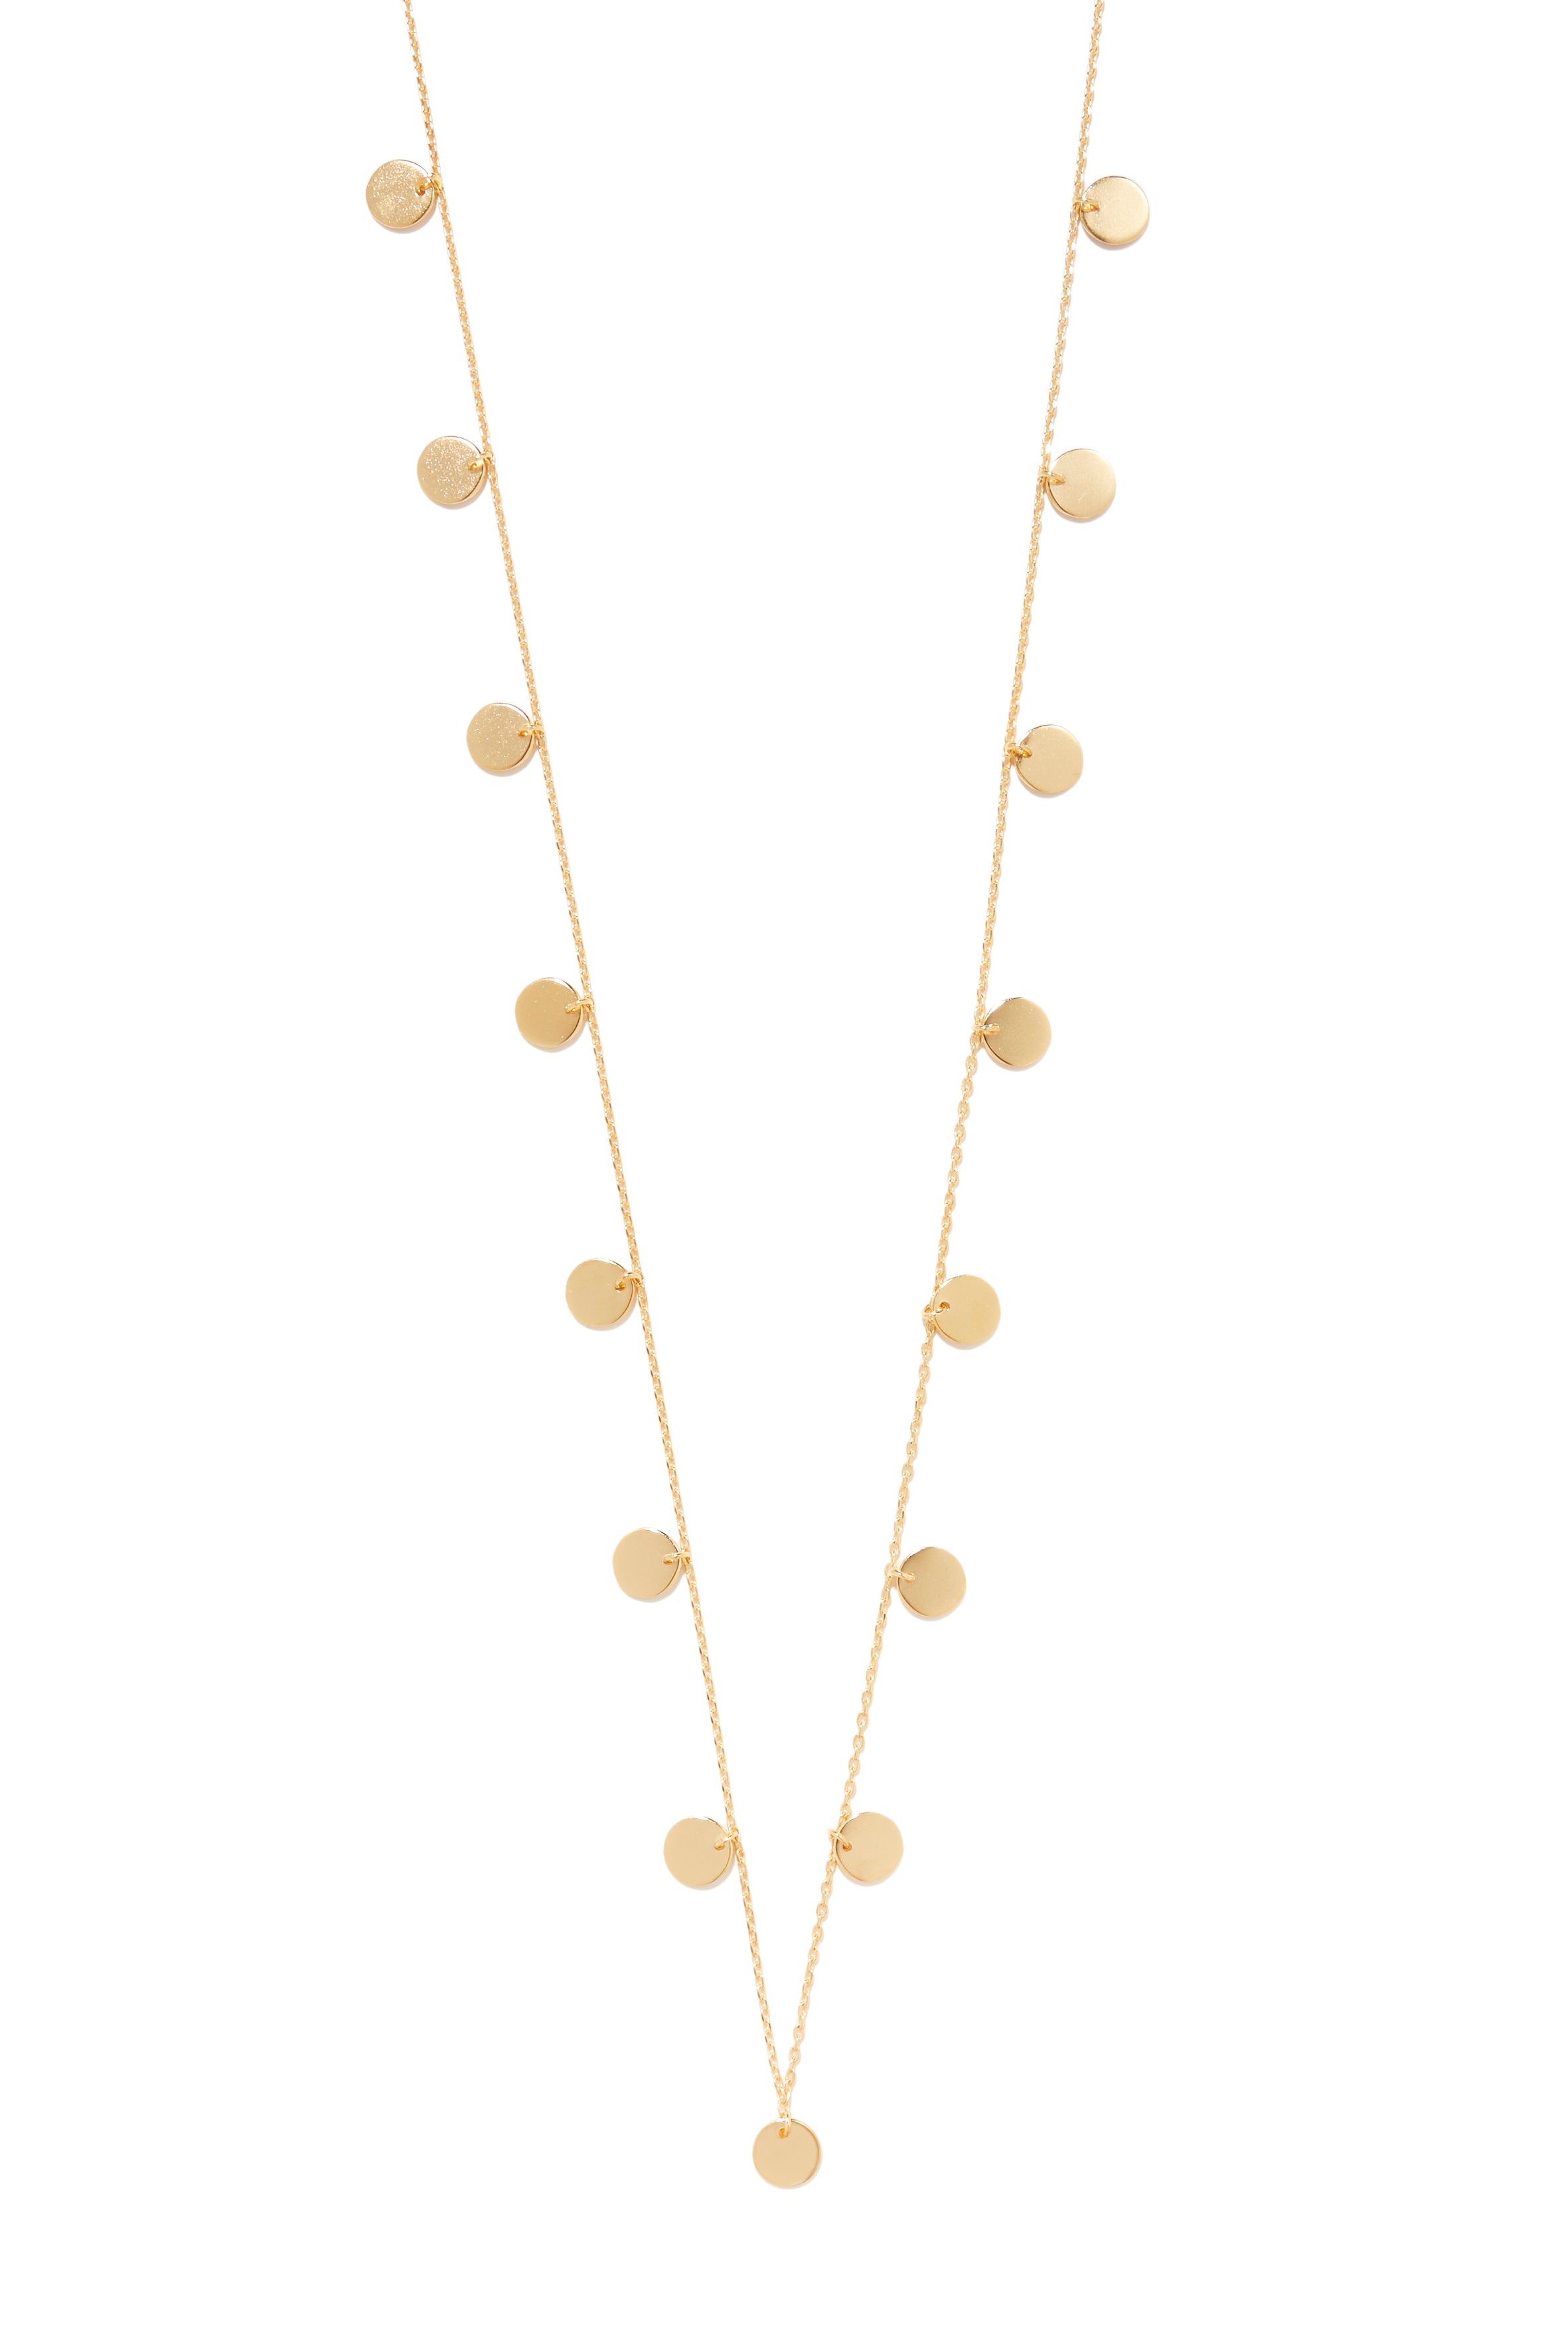 Calista necklace